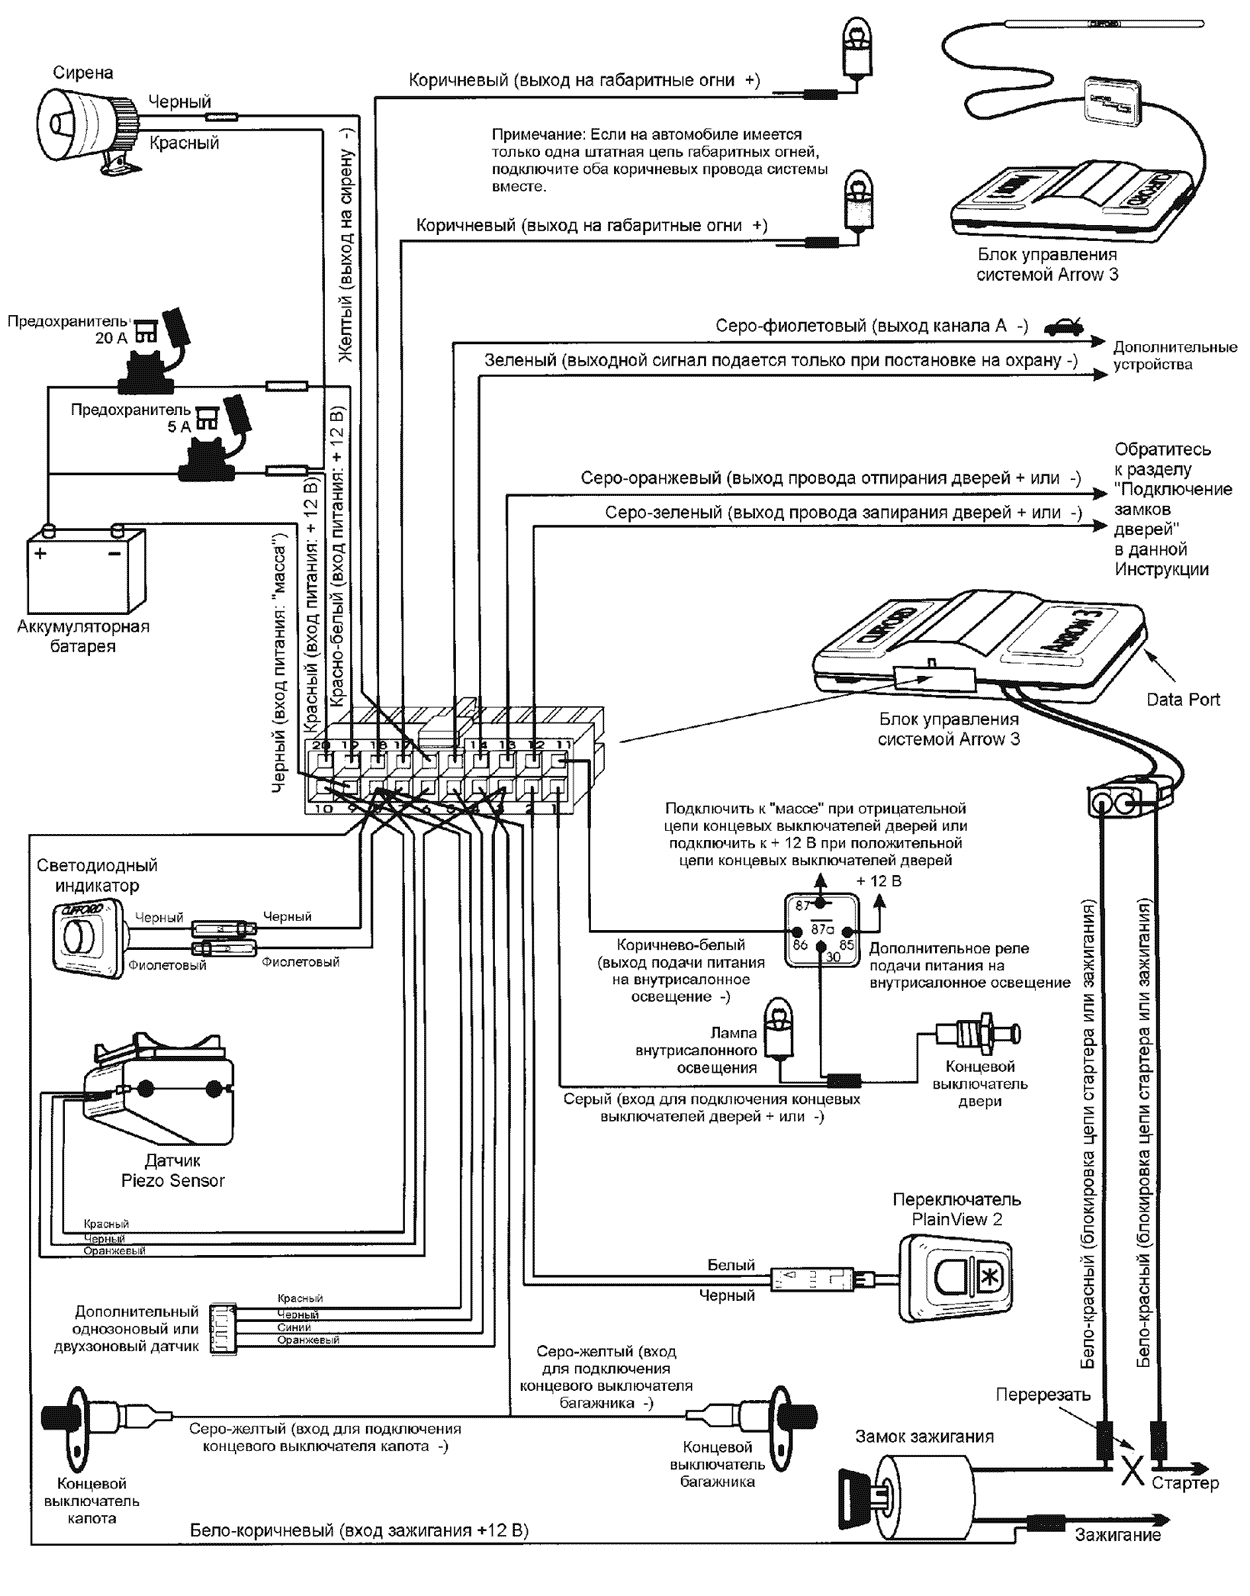 Схема подключения CLIFFORD ARROW 3